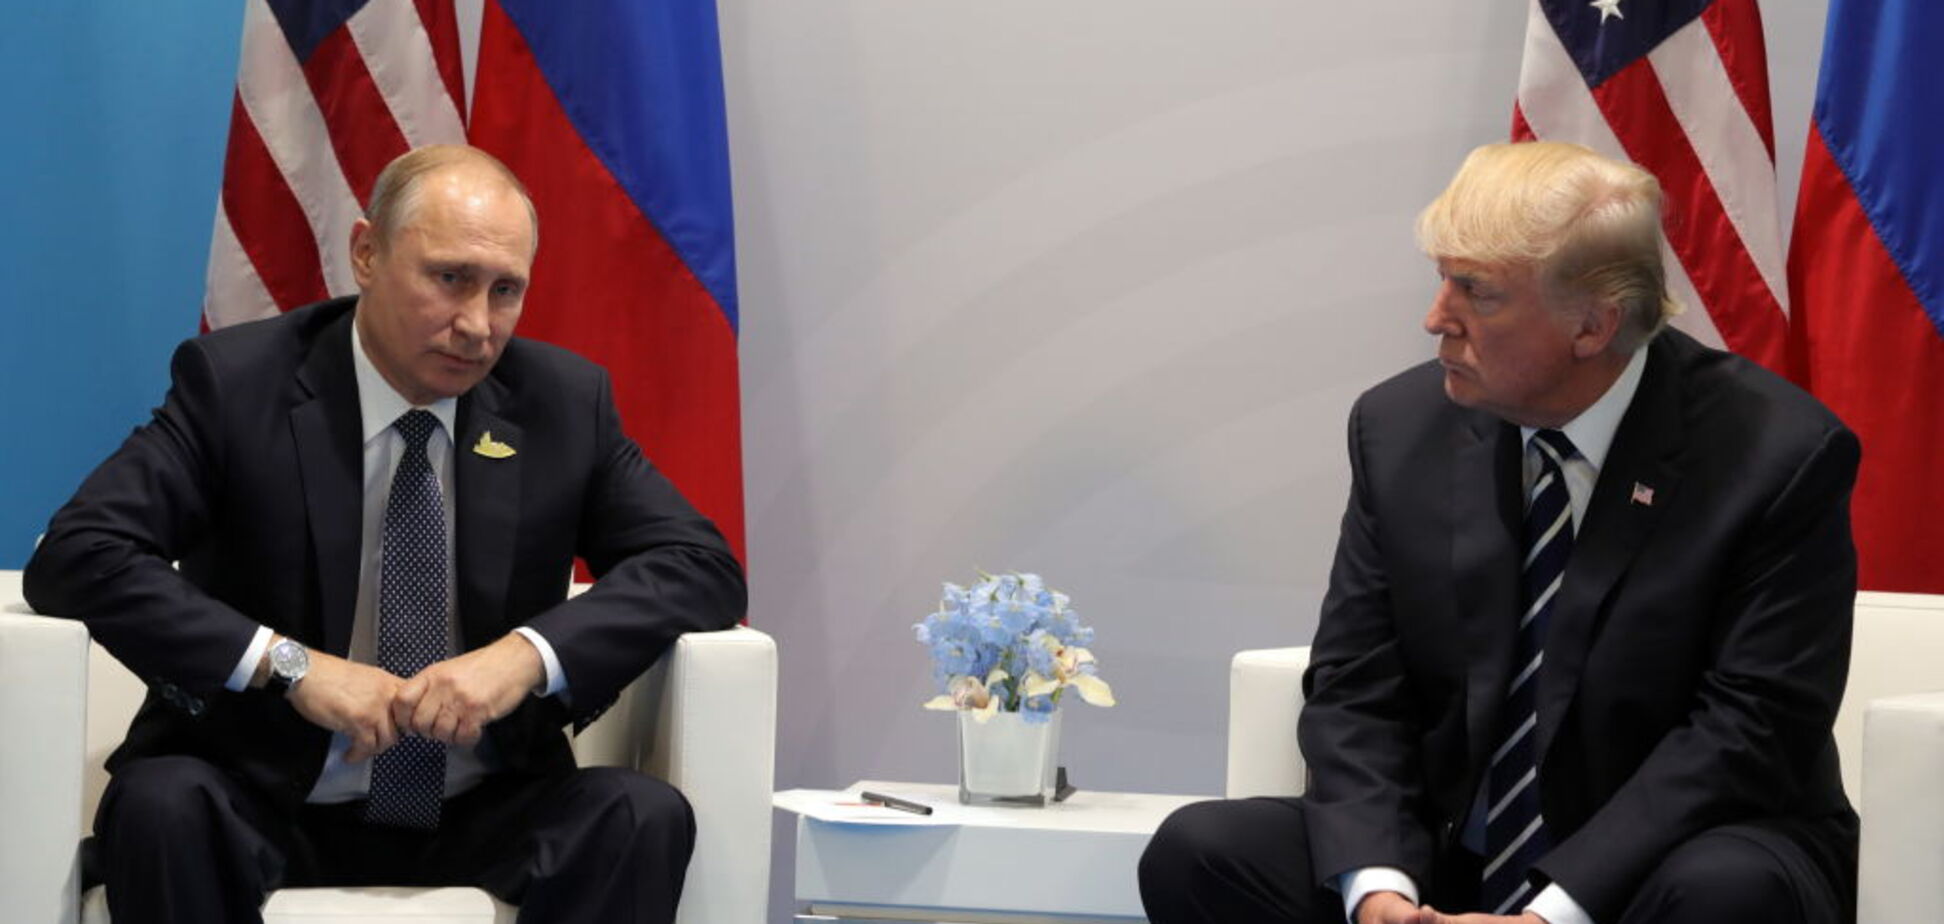 Путин предлагал Трампу 'нереалистичный' план нормализации отношений: в США раскрыли детали